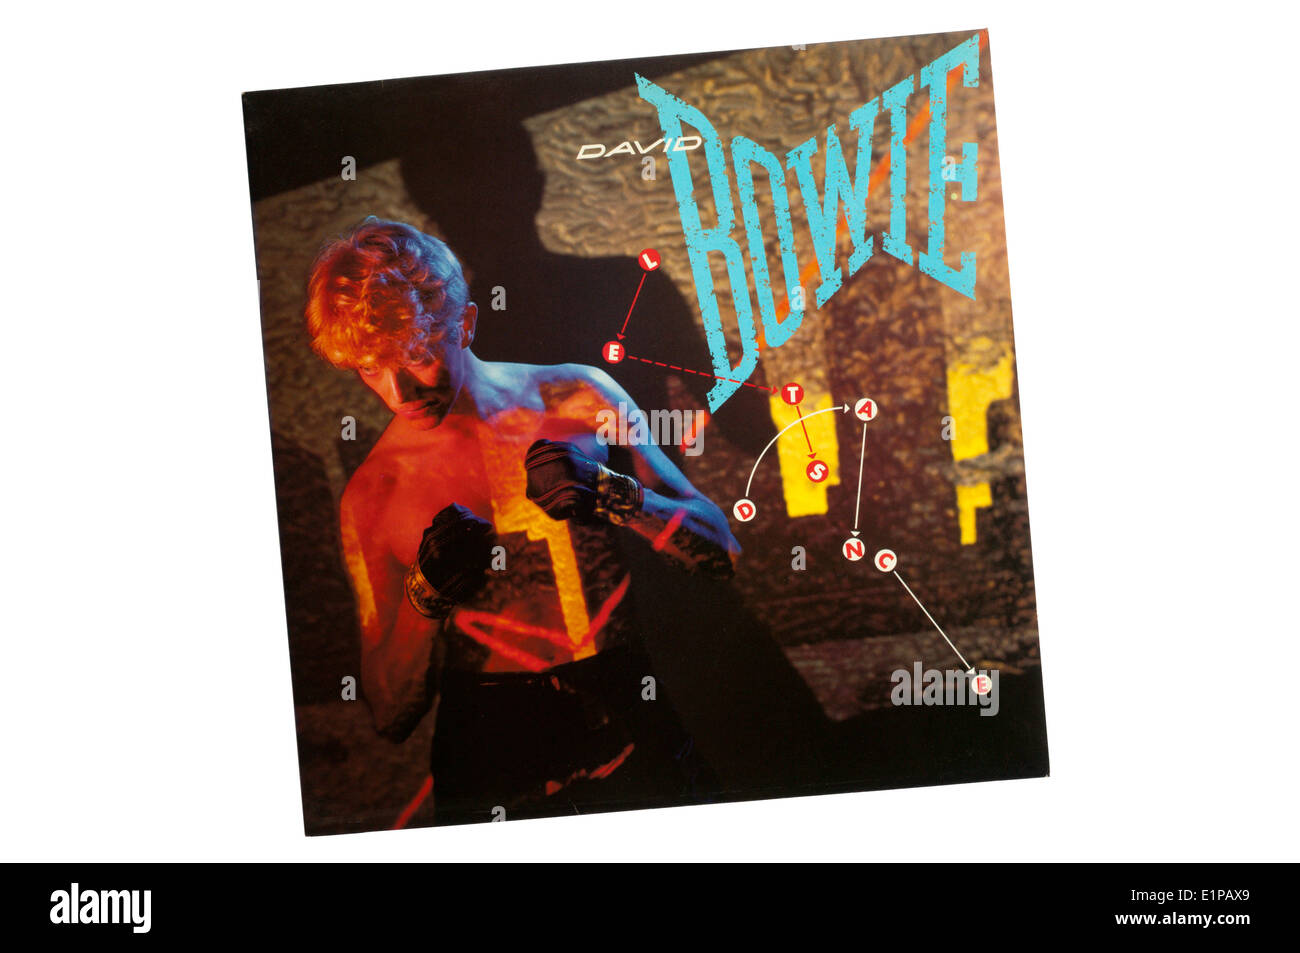 Let's Dance es el 15º álbum de estudio de David Bowie, lanzado en 1983. Foto de stock